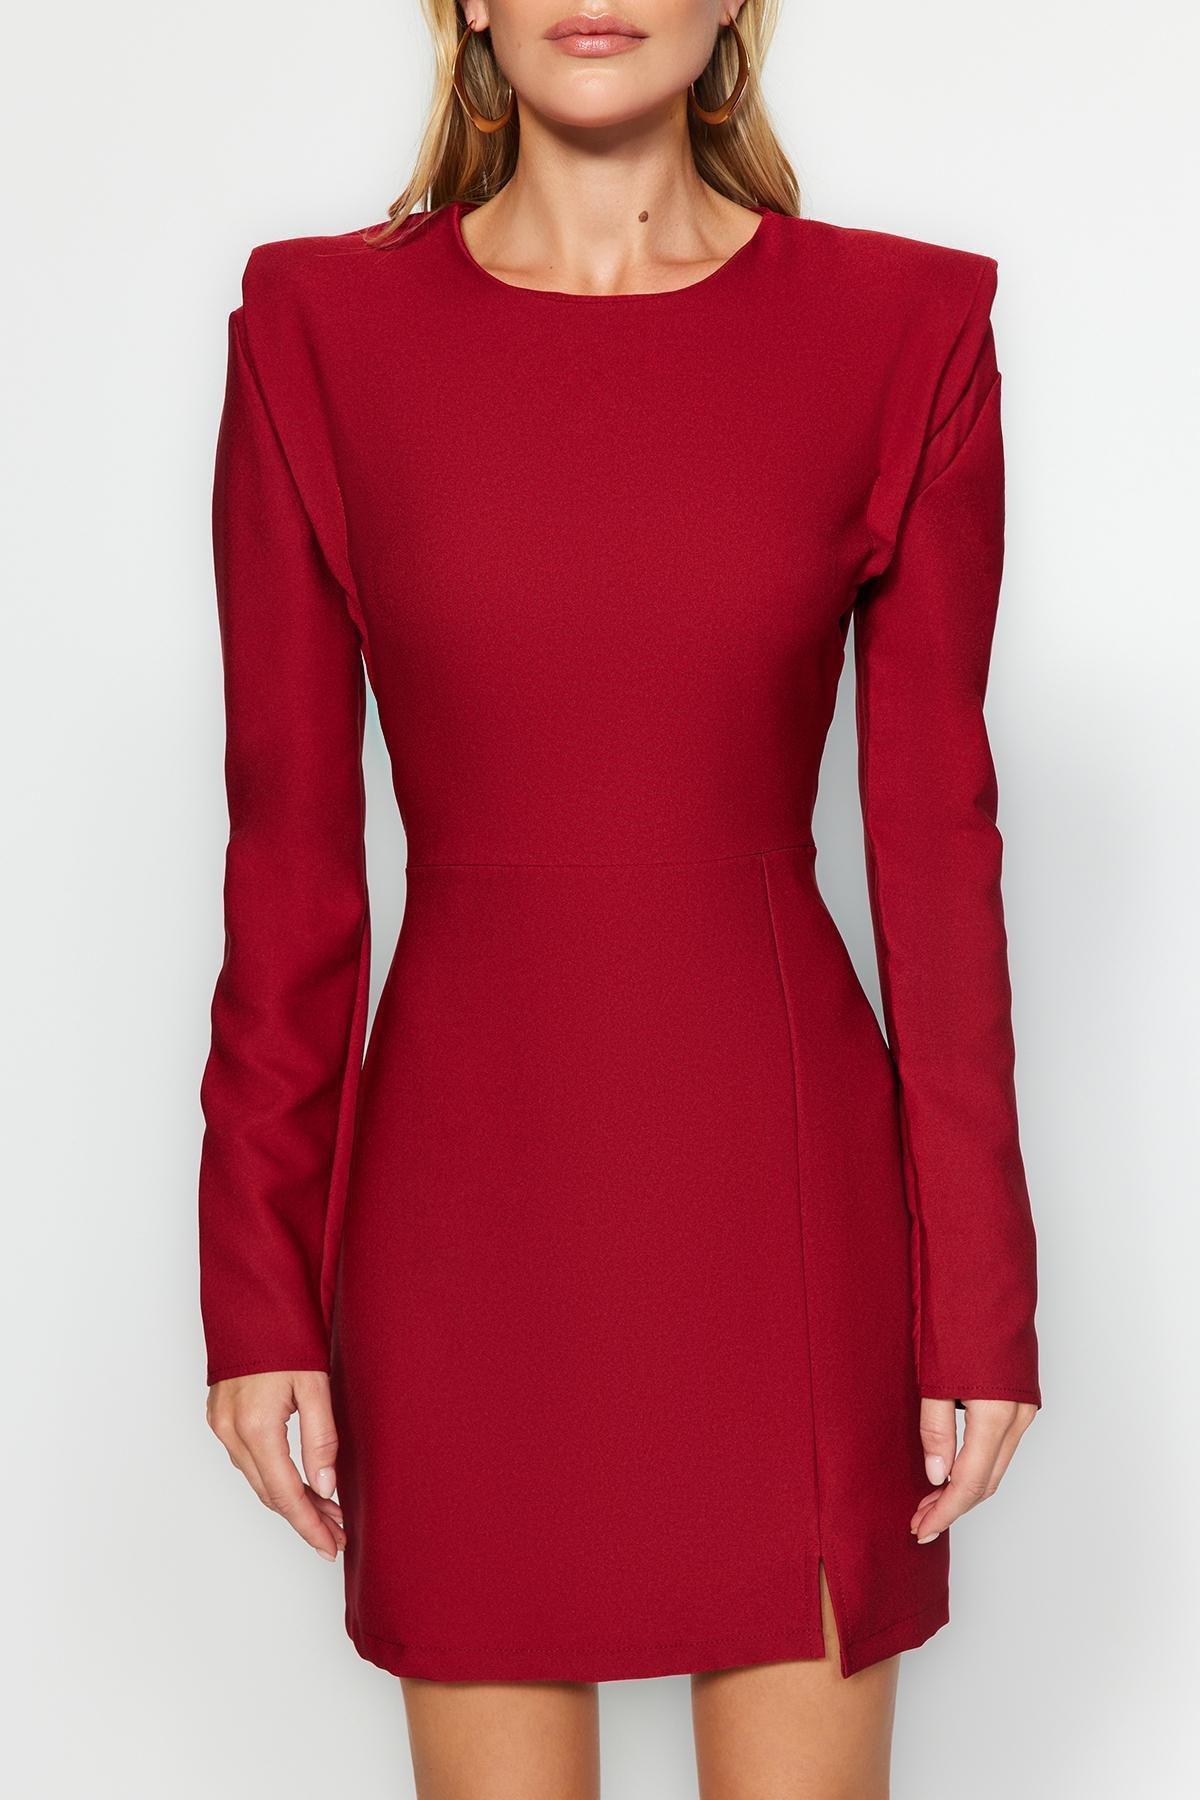 Trendyol - Red Padded Woven Dress